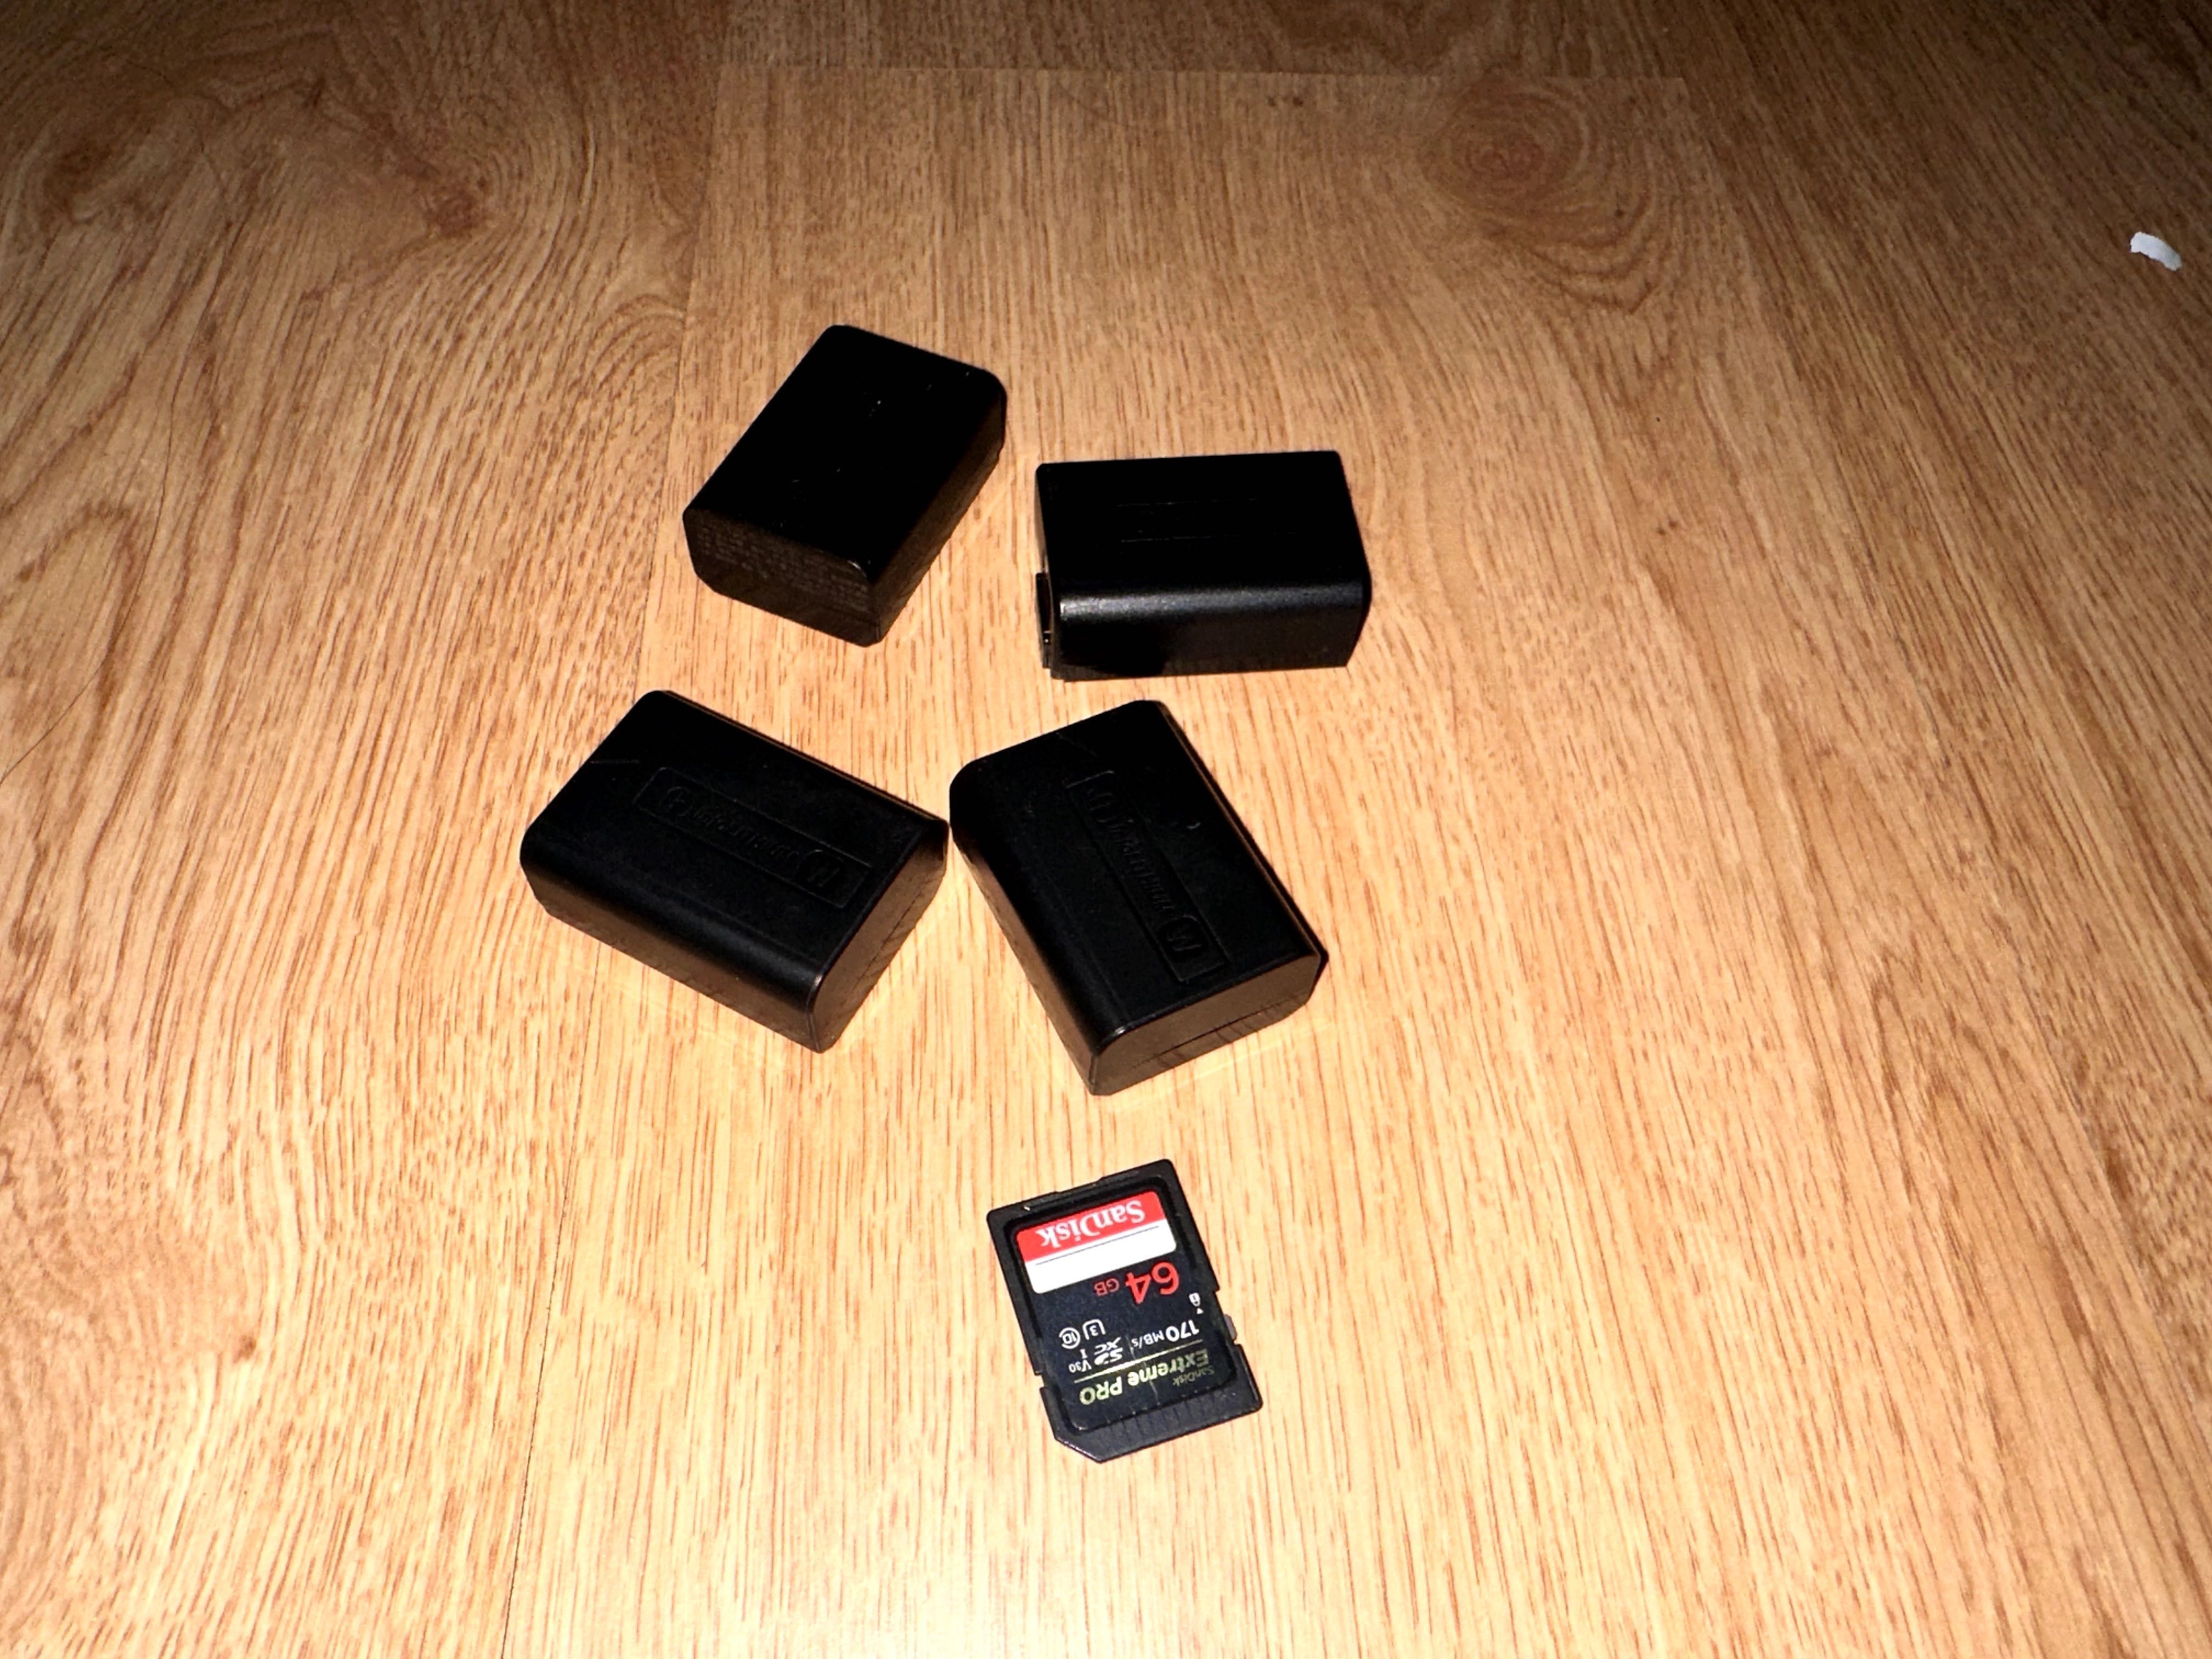 Sony Alpha 6400 + Lente 16-50mm 4 baterias e um cartão de memória 64gb